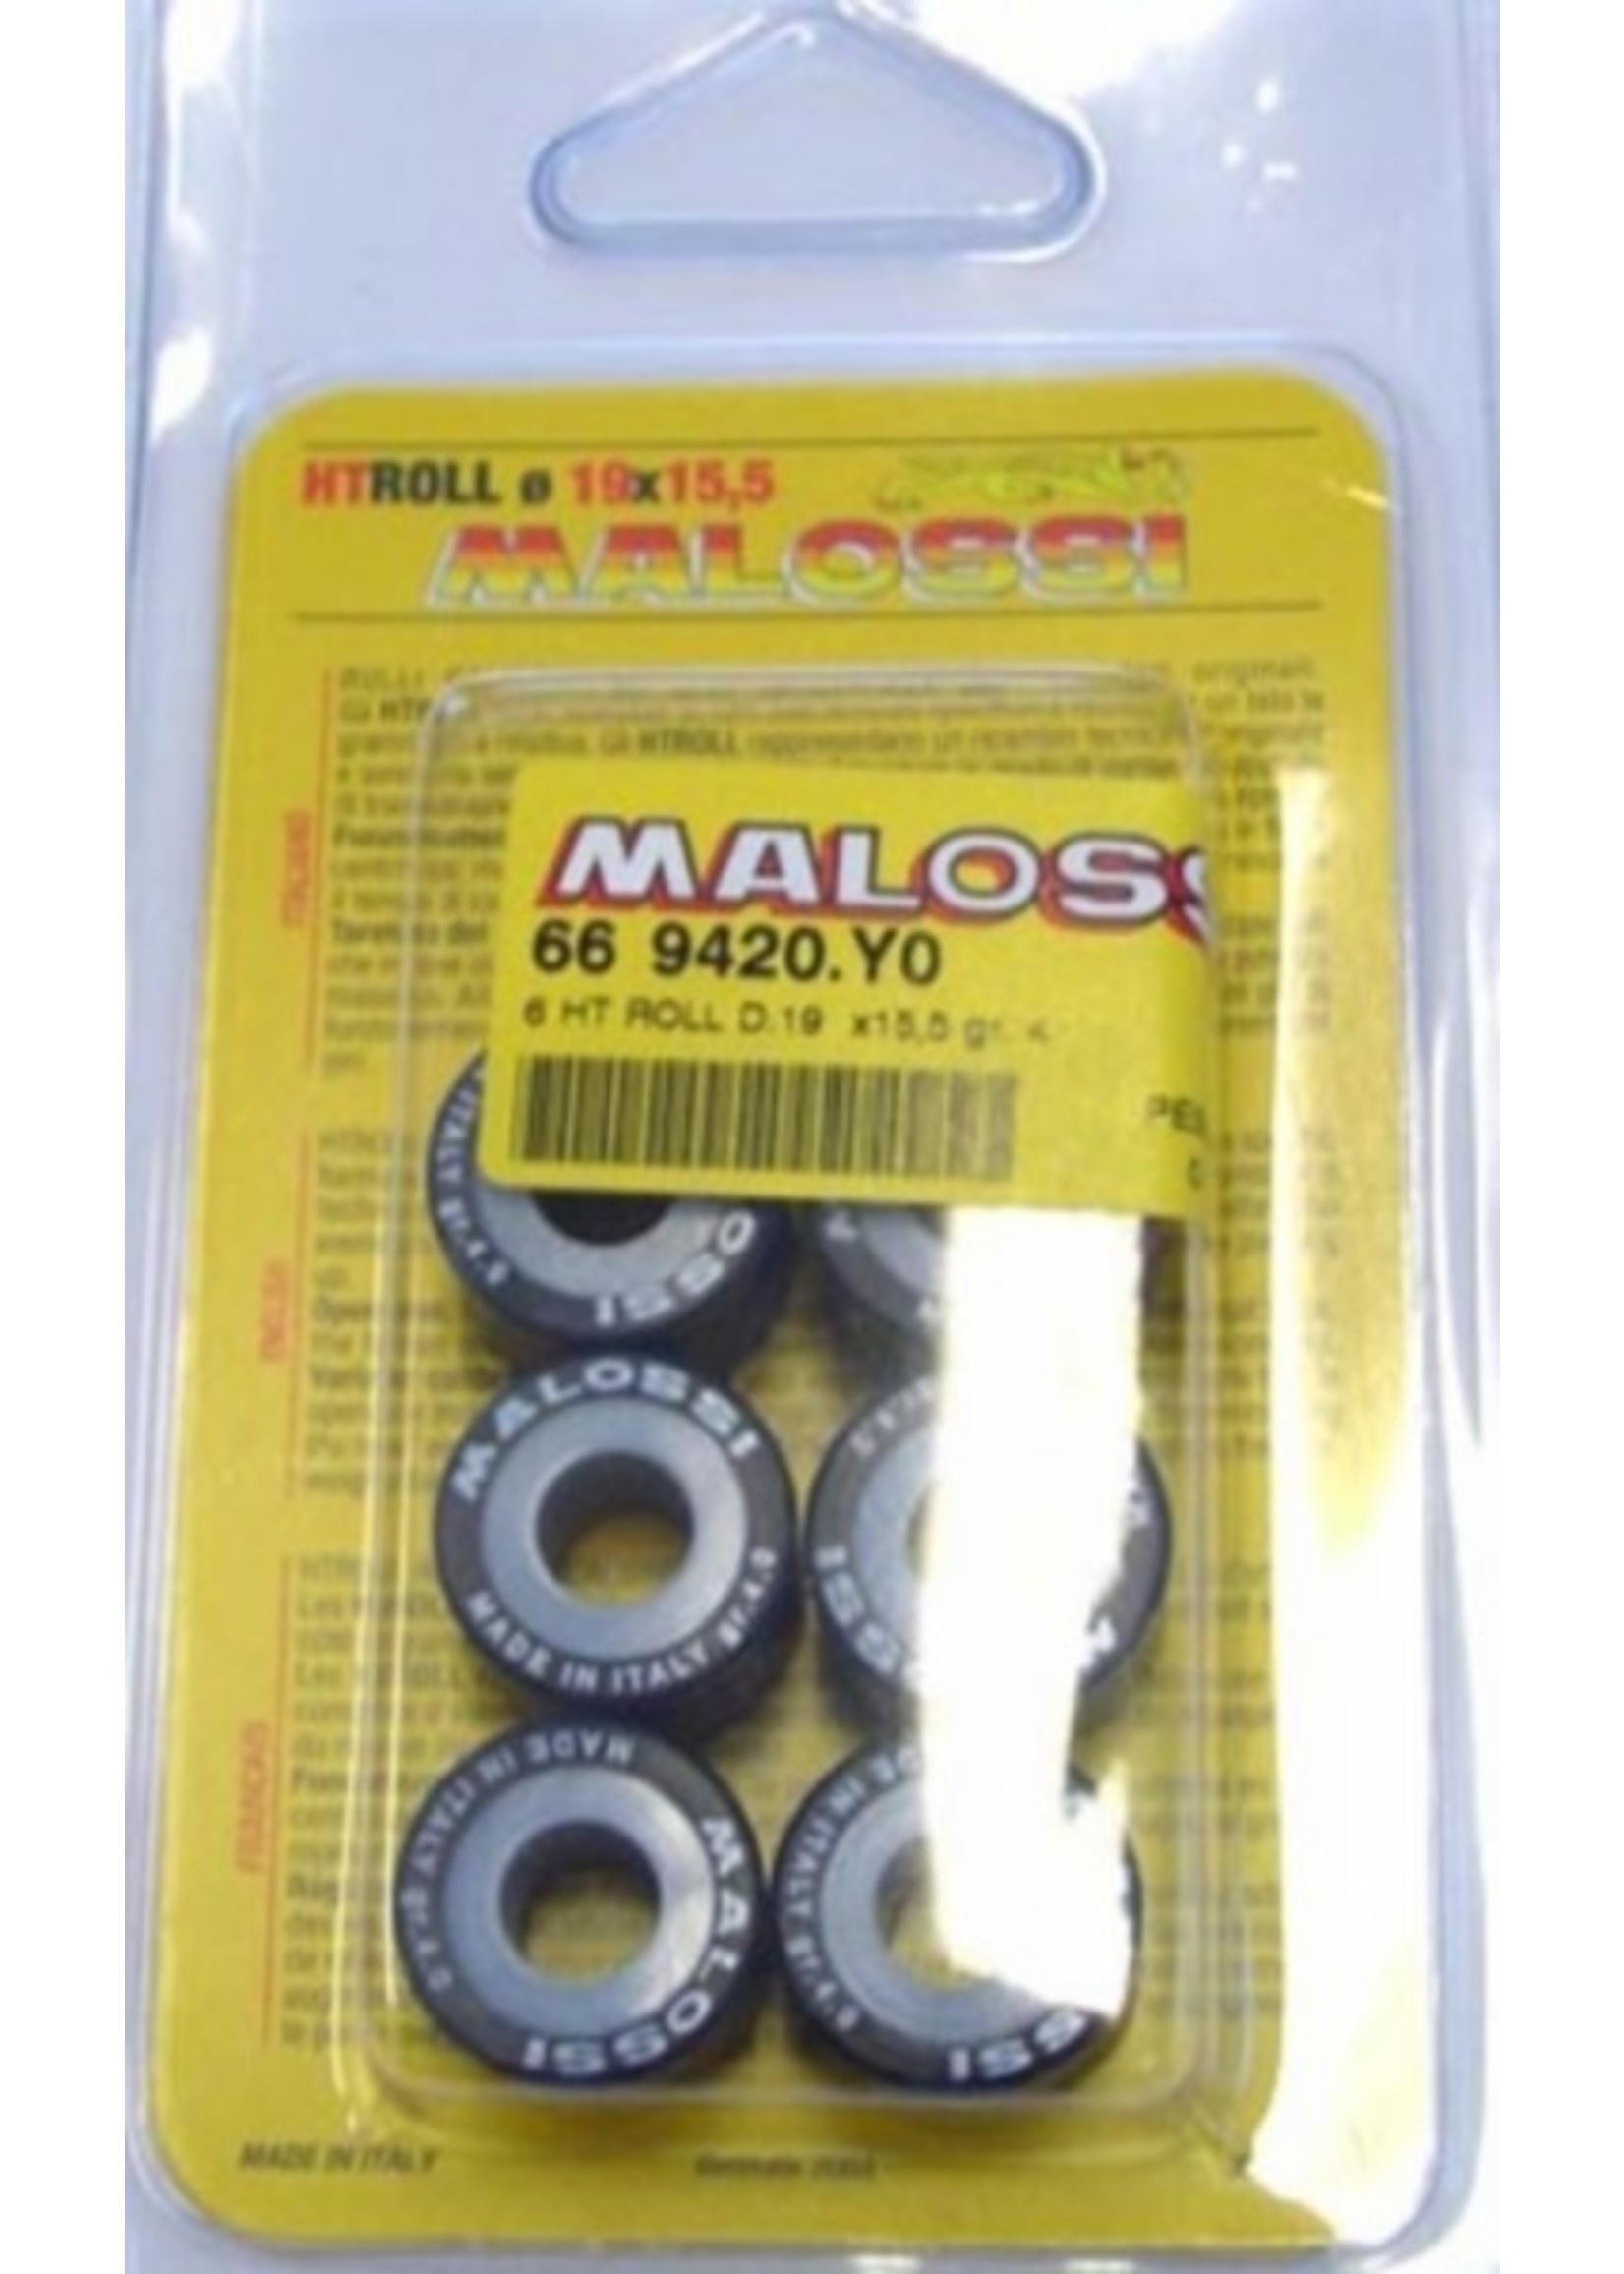 Malossi Variorollen 4.0gr sco piaggio nt 19x15.5mm malossi 669420.y0